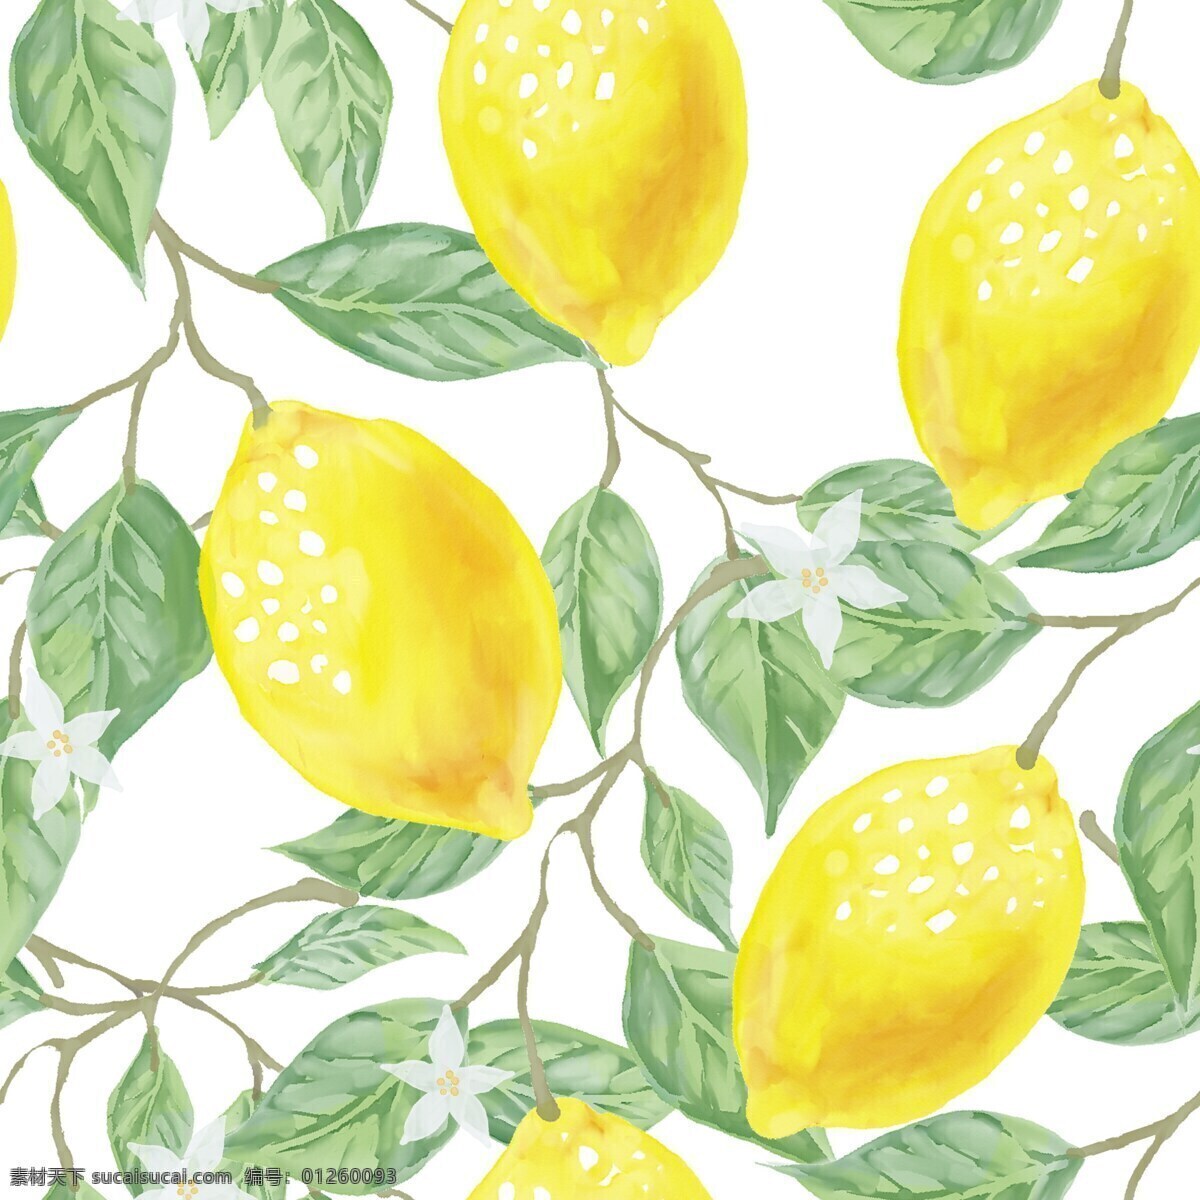 柠檬插画 黄色 柠檬设计 柠檬片 食物 柠檬 蔬菜 食品 新鲜 美味 美食 素食 蔬菜水果 水果 水果蔬菜 生活百科